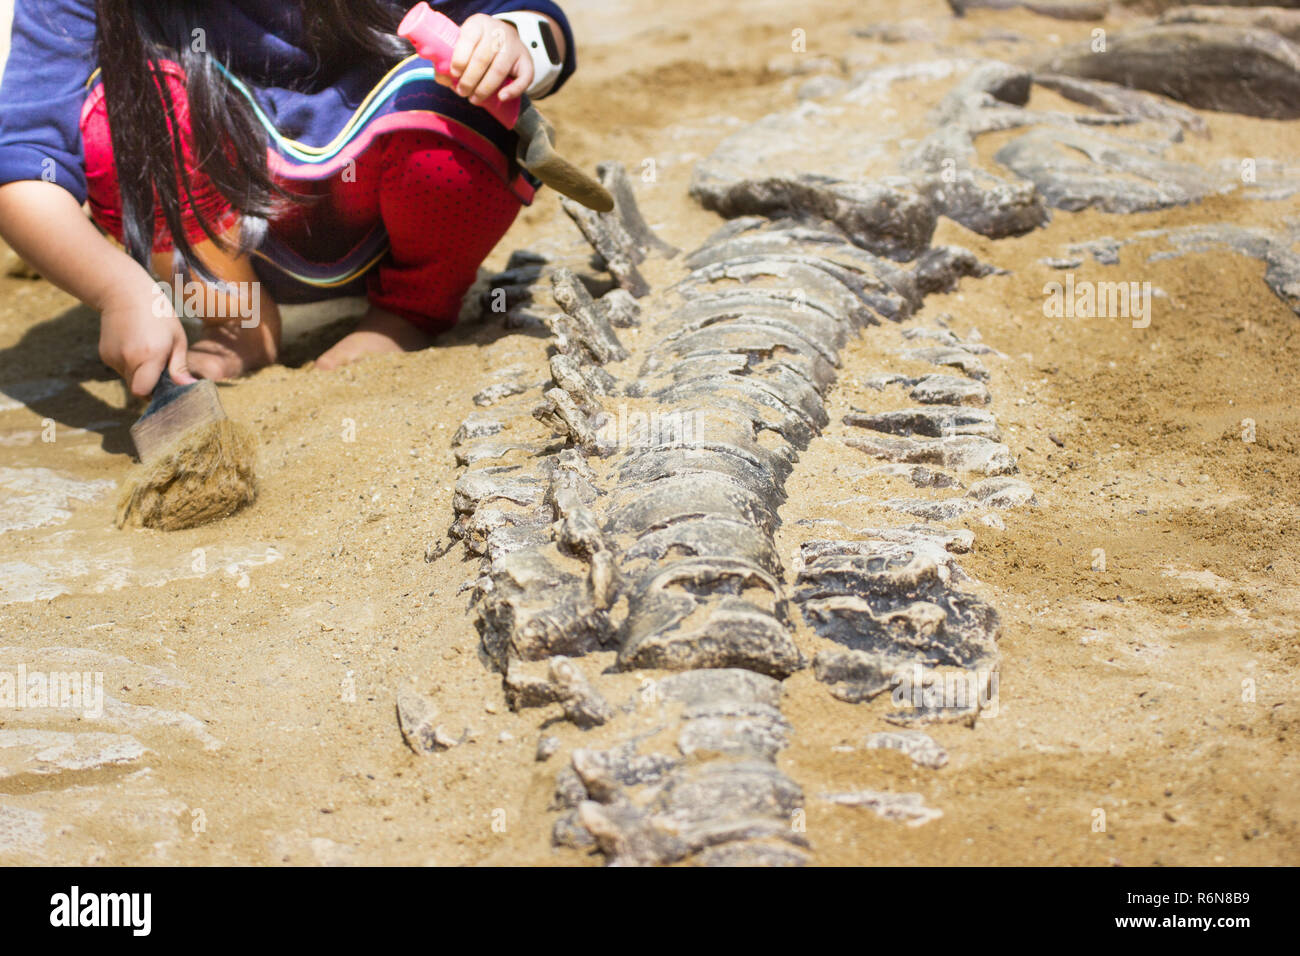 Les enfants sont les restes de dinosaures de l'apprentissage, l'excavation de simulation des fossiles de dinosaures dans le parc. Banque D'Images